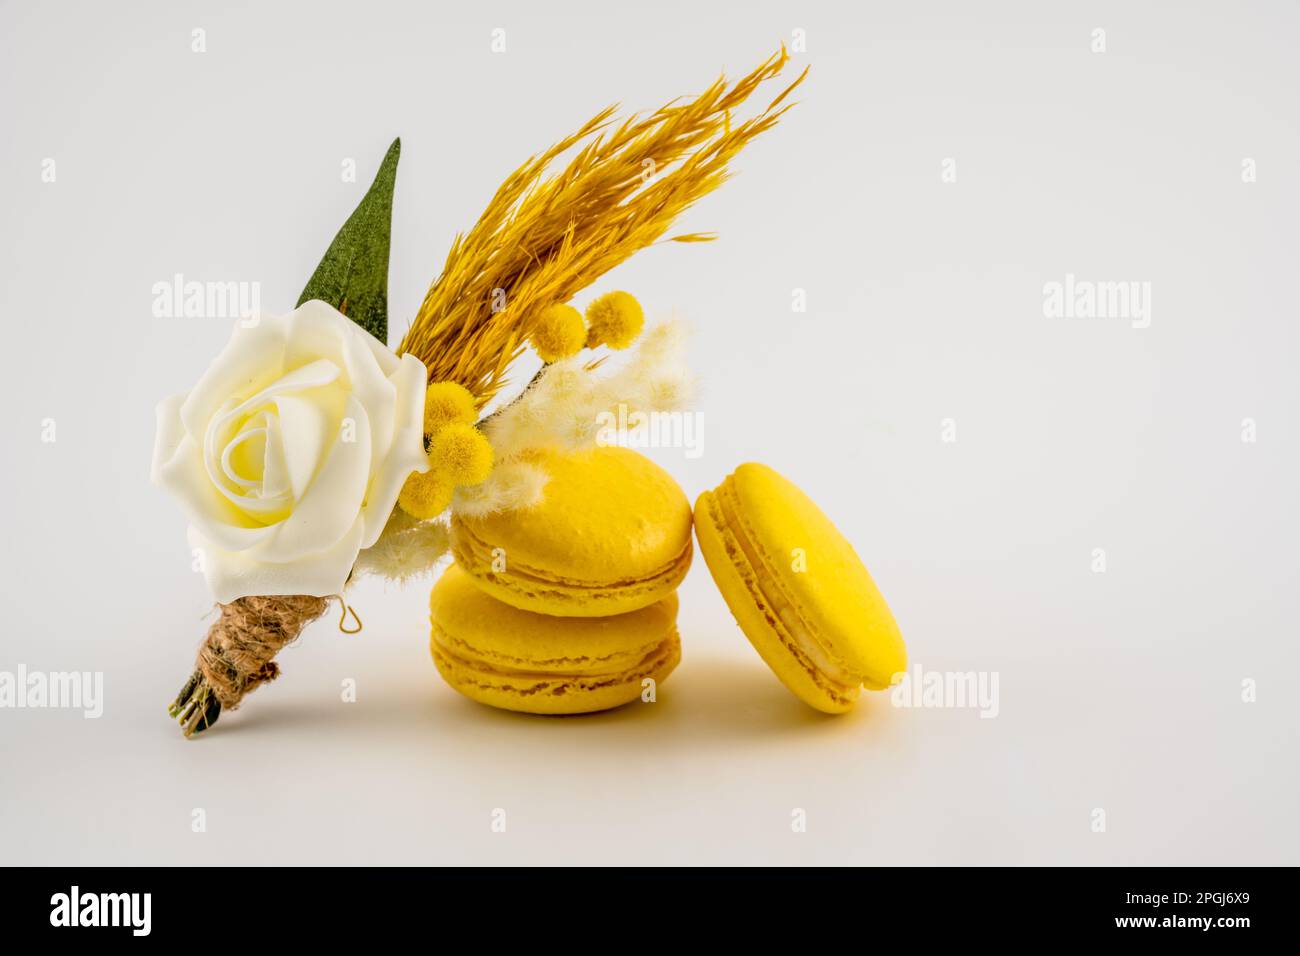 bottone floreale di nozze buco appoggiato contro una pila di macaron gialli isolato su uno sfondo bianco Foto Stock